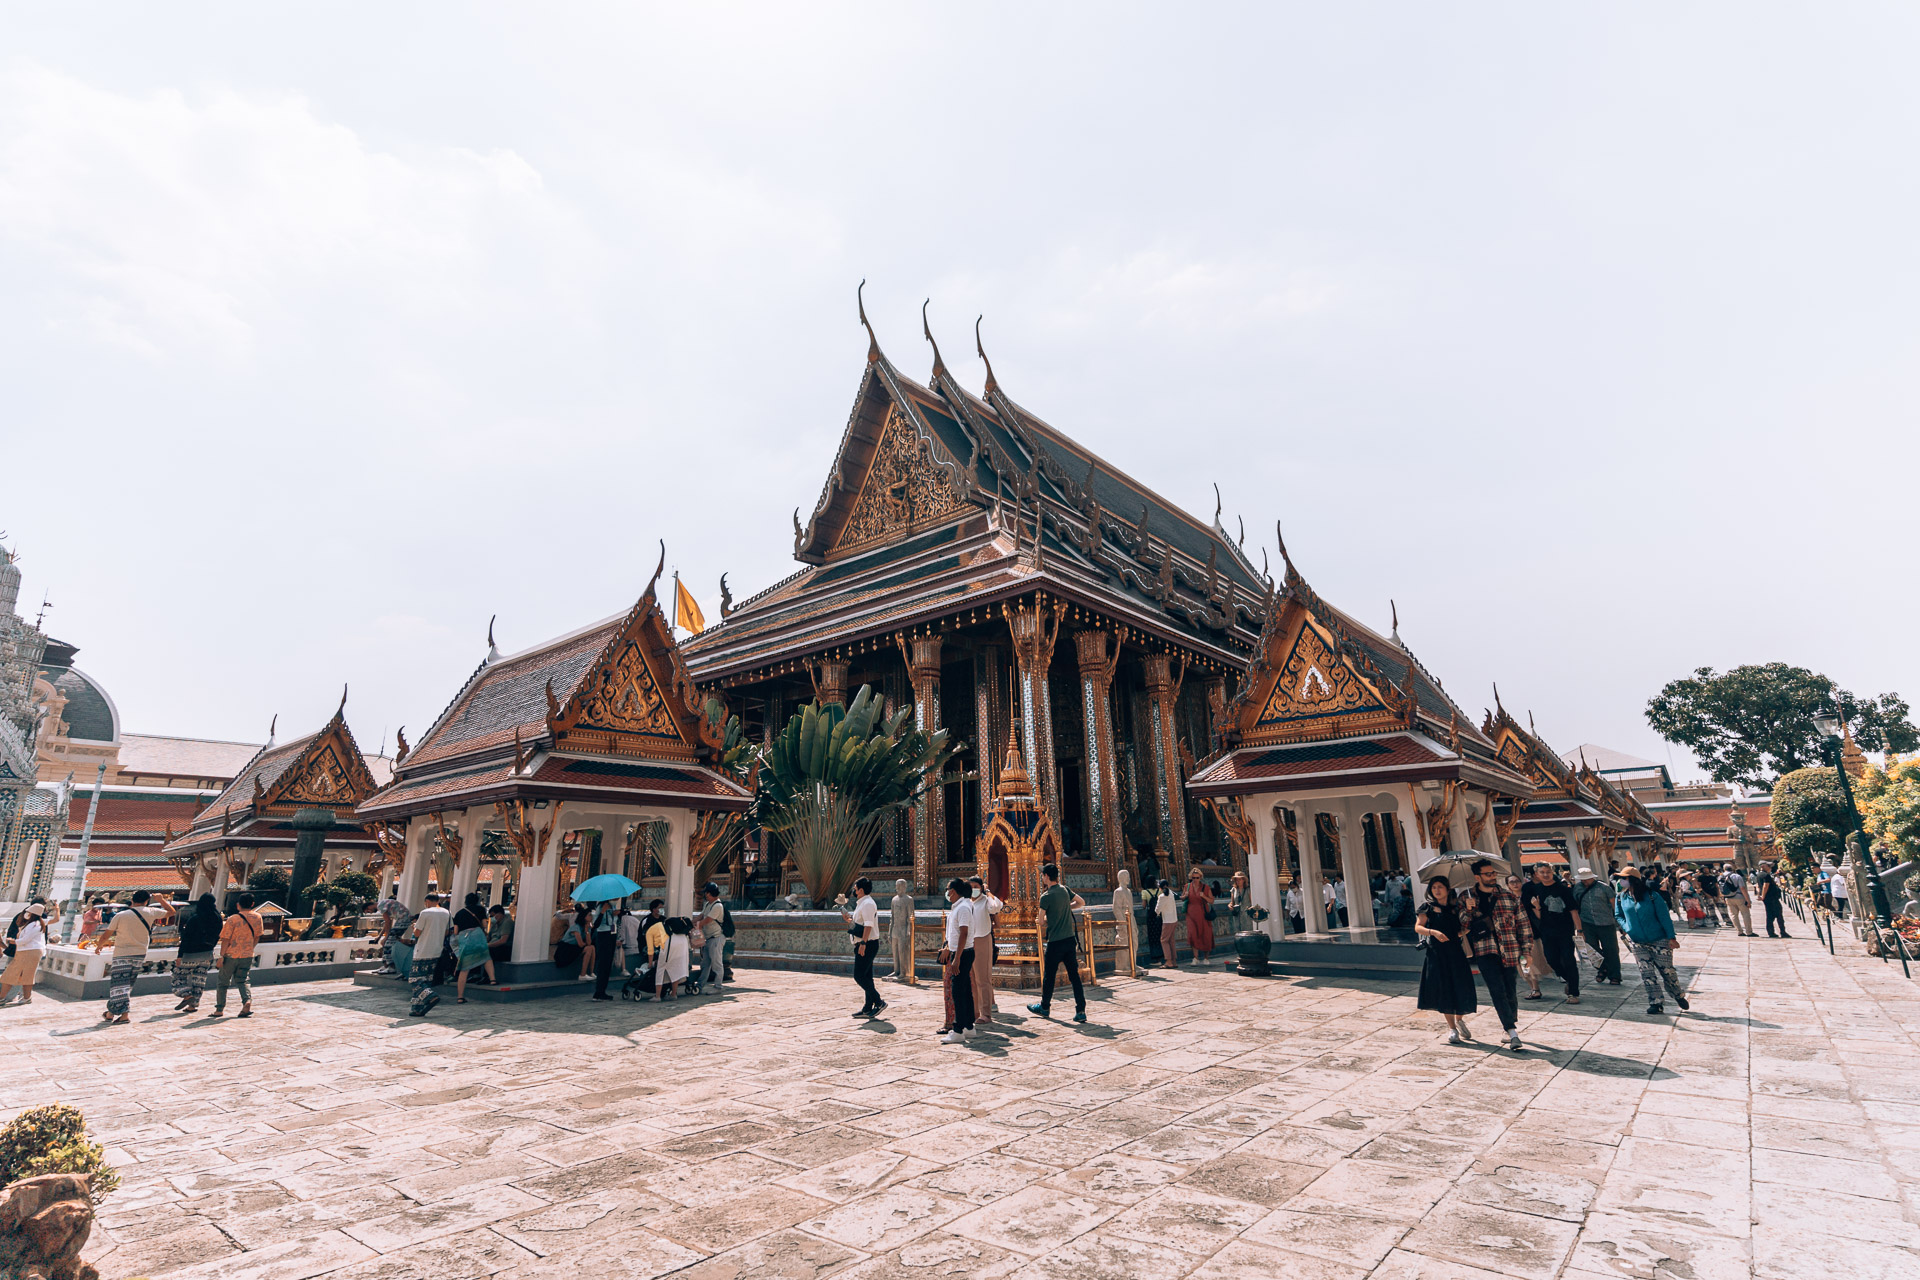 Thailand - Bangkok - The Grand Palace44- BLOGPOST HQ